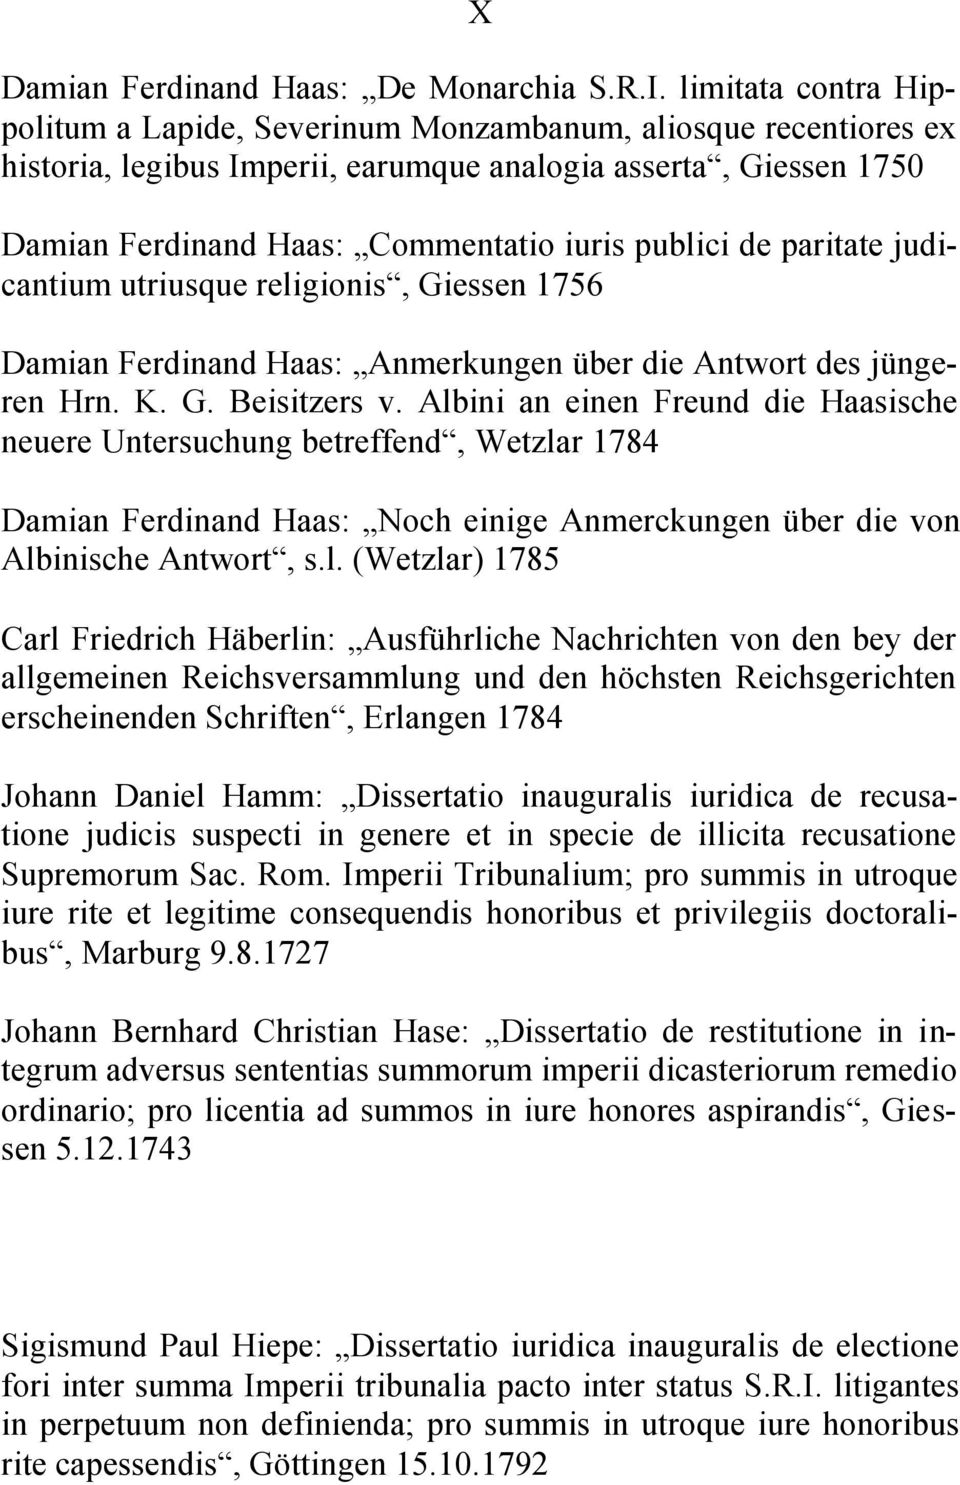 de paritate judicantium utriusque religionis, Giessen 1756 Damian Ferdinand Haas: Anmerkungen über die Antwort des jüngeren Hrn. K. G. Beisitzers v.